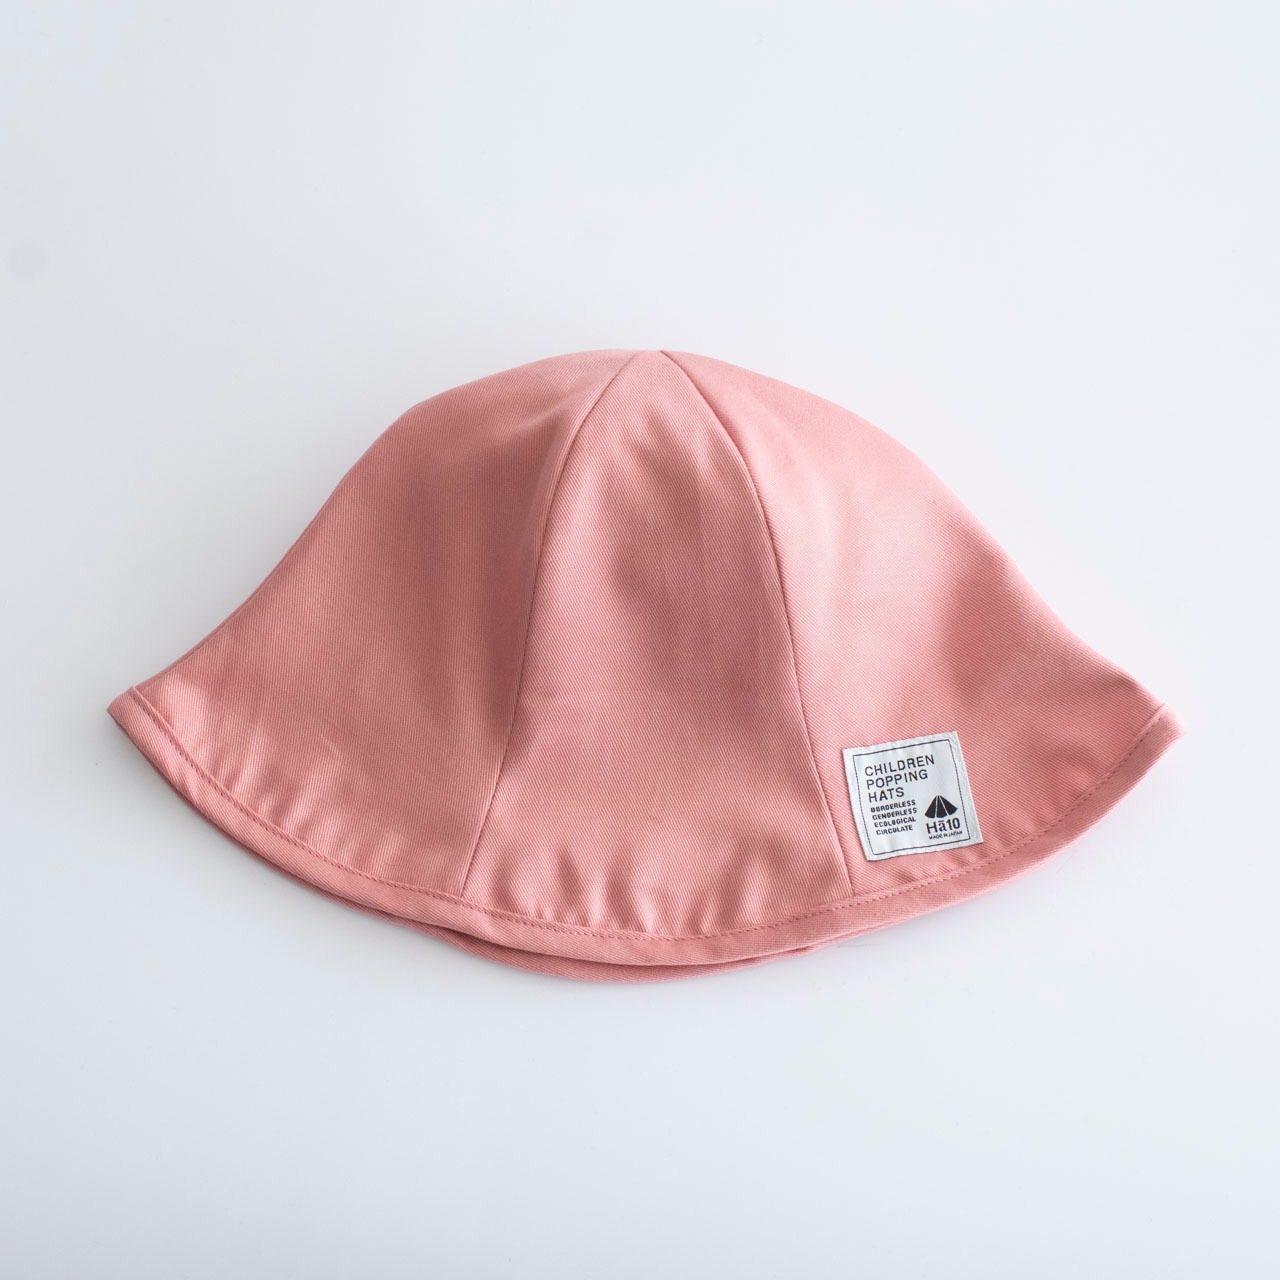 チューリップハット【ピンク】ブランド 春 夏 子供 帽子 赤ちゃん ベビー キッズ ハット キャップ 日本製 出産祝い